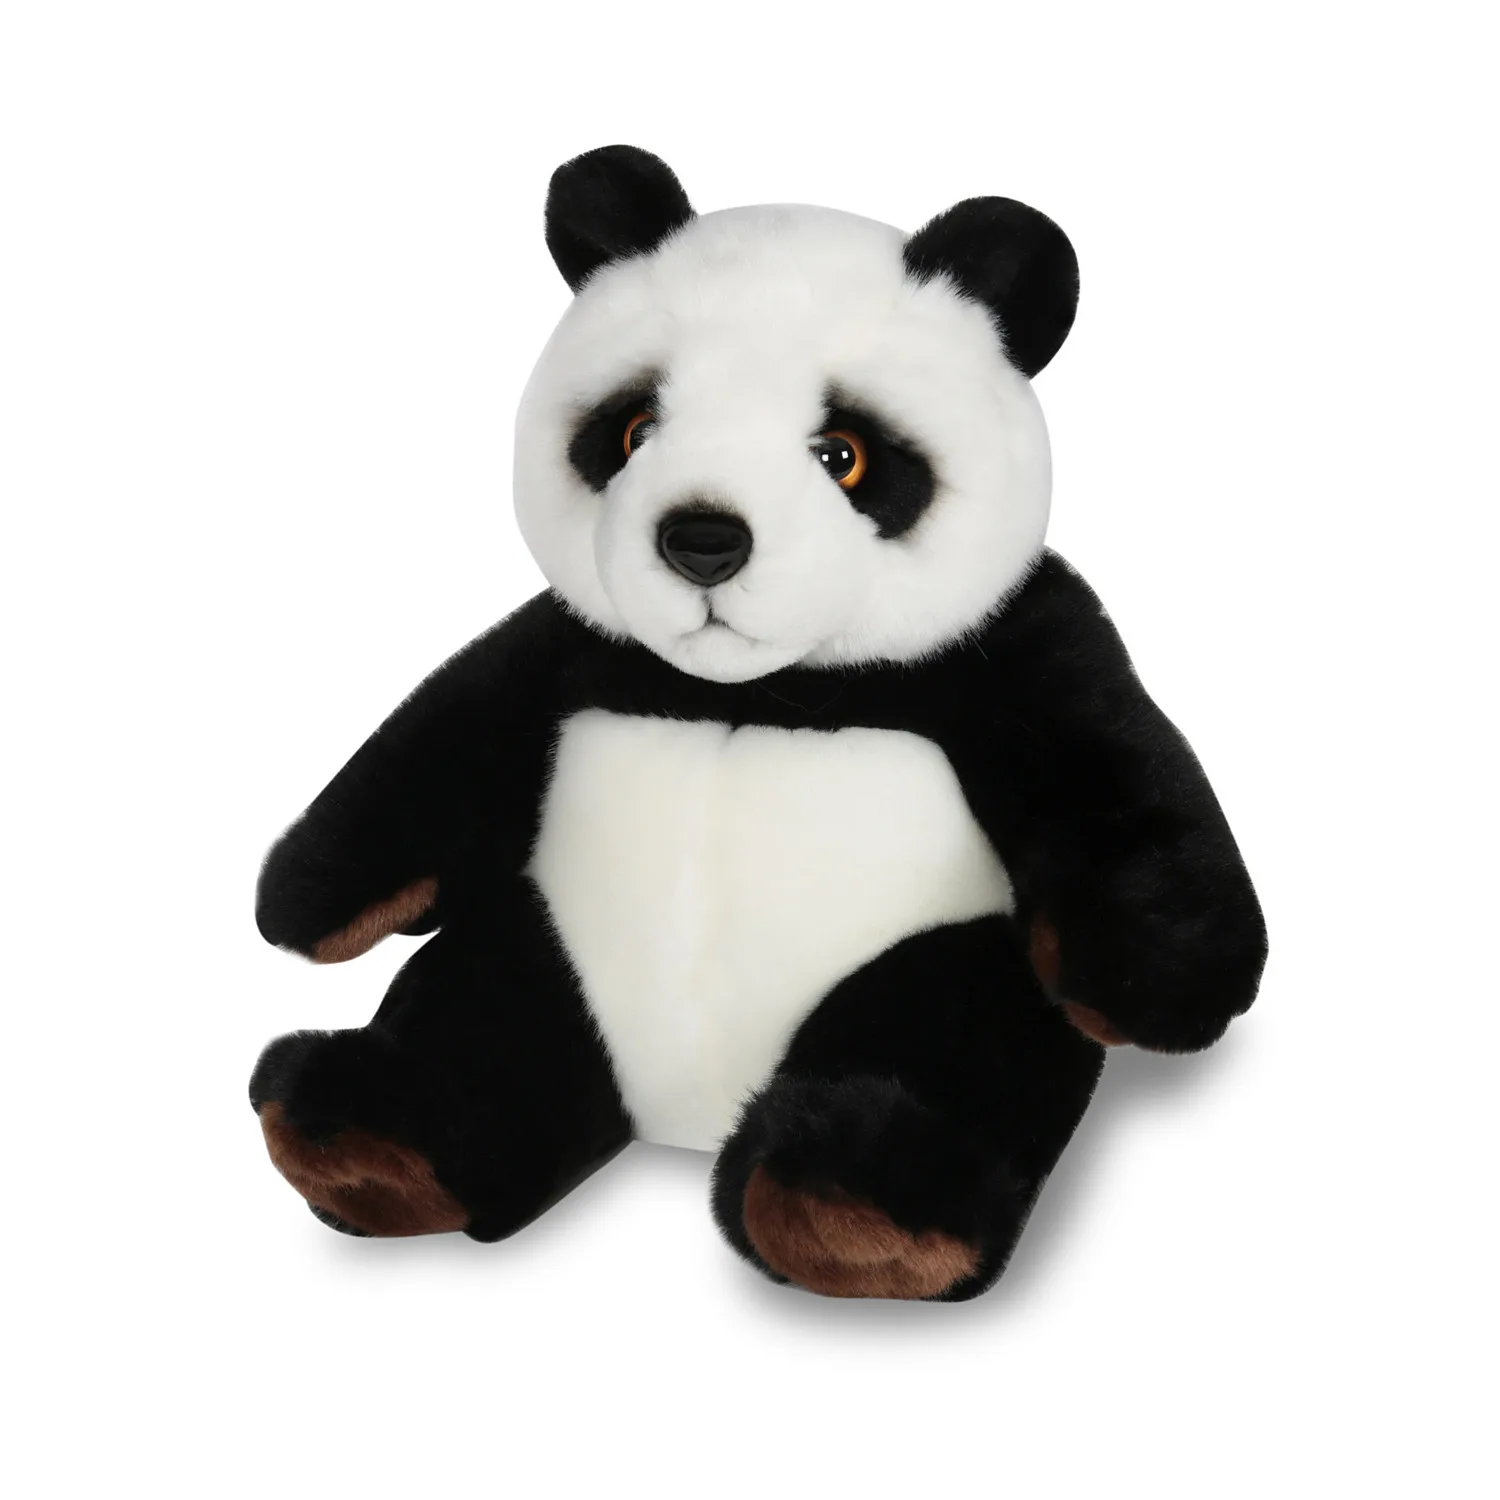 Мягкая игрушка Панда Понго 24 см 71444 ТМ Коробейники - купить по выгодной цене |